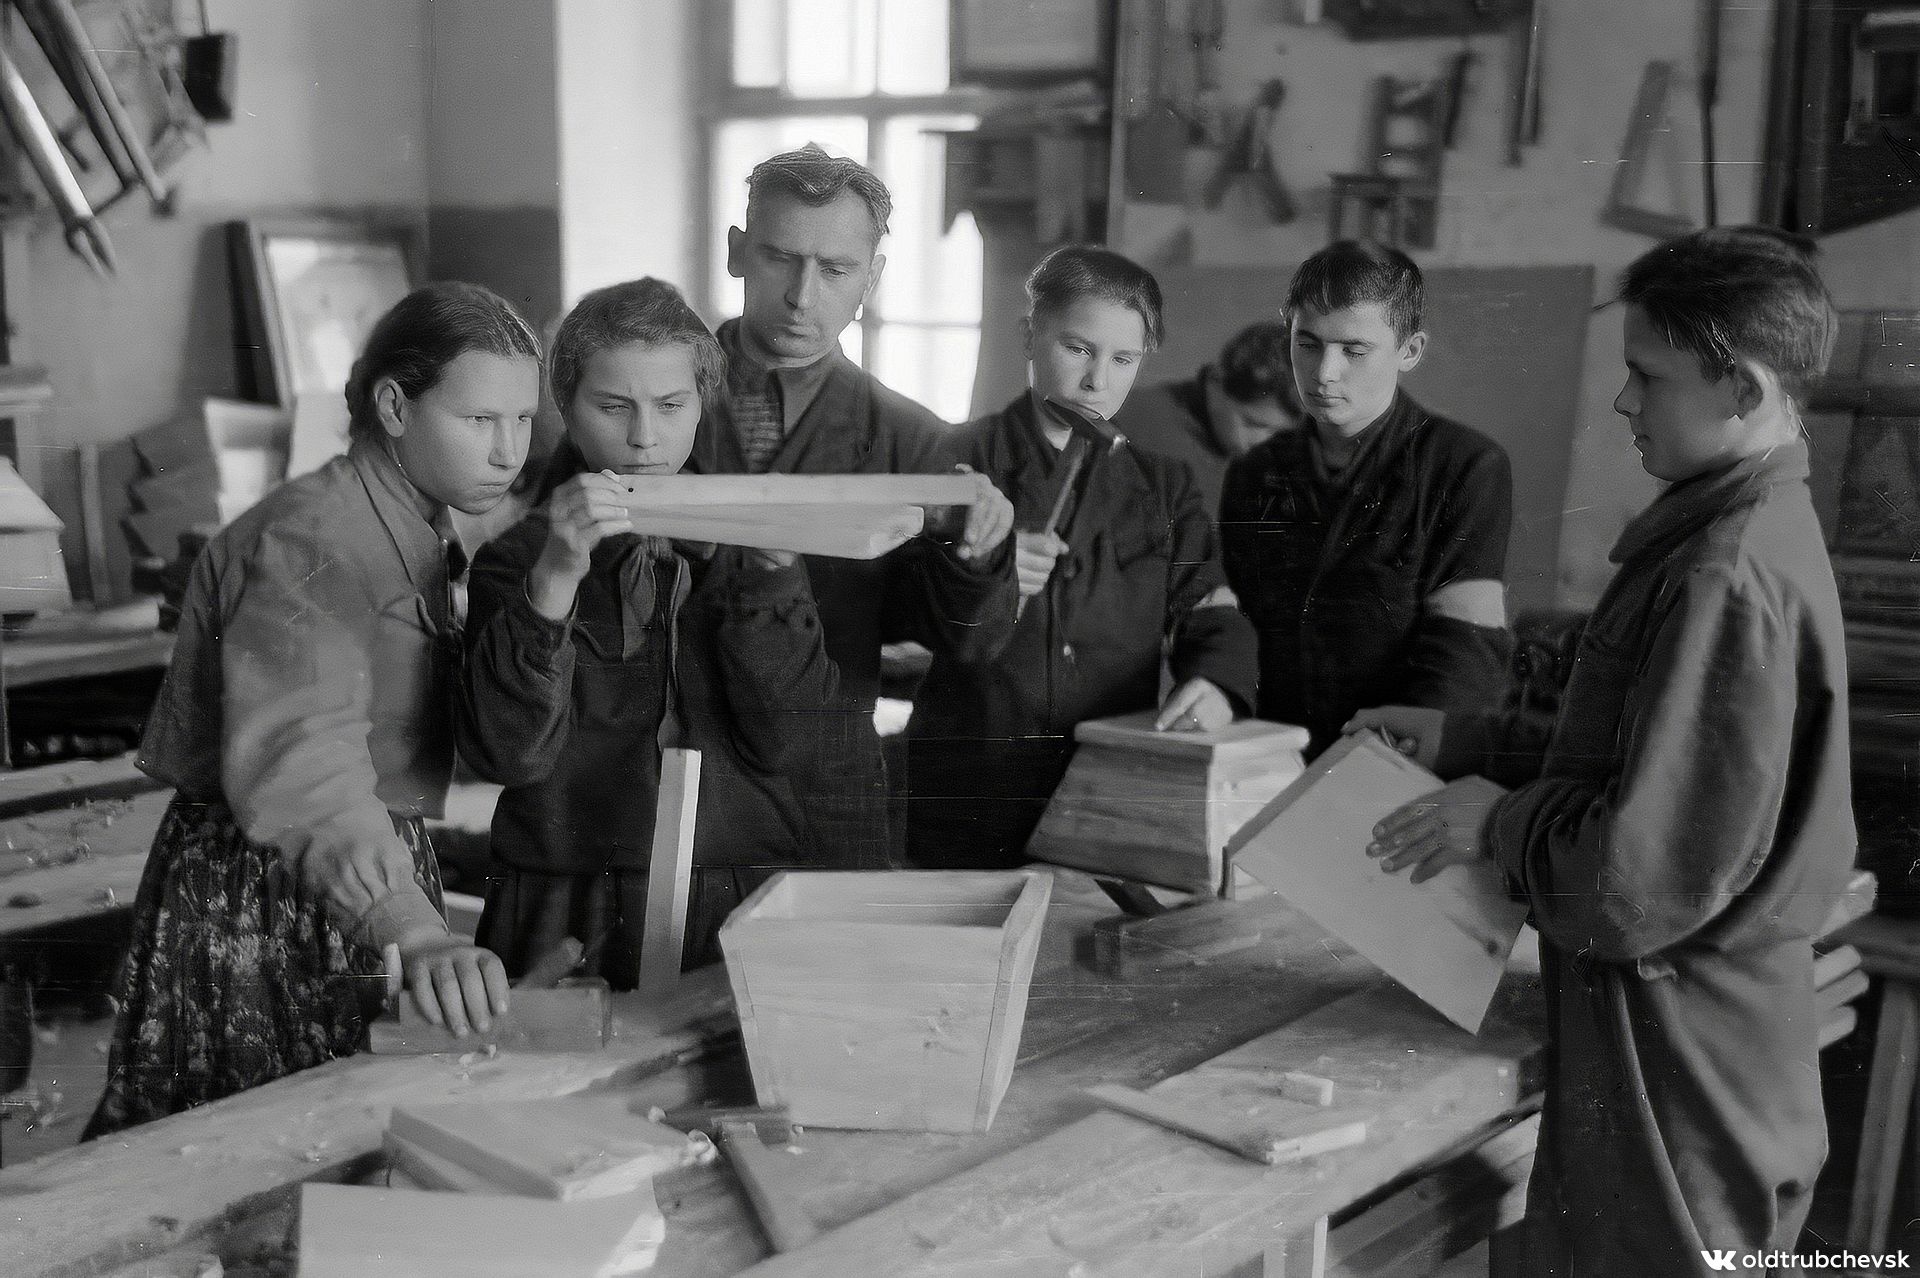 Брянцам показали школьную фотографию урока труда 1950-х годов